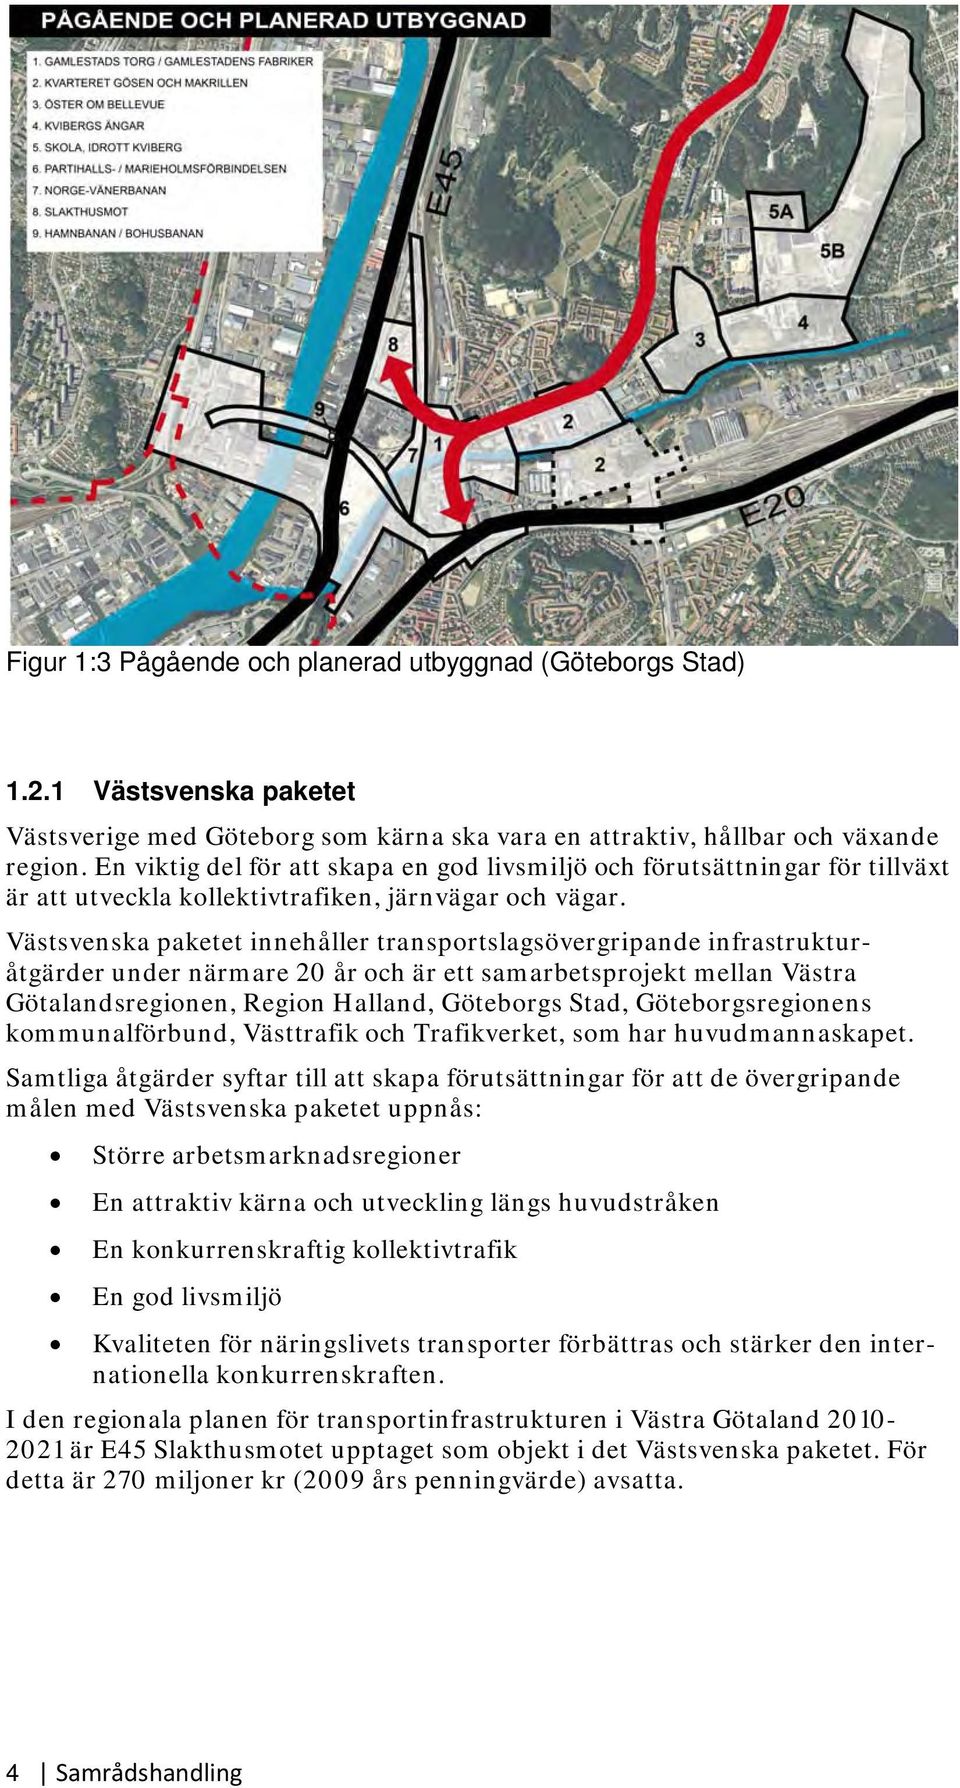 Västsvenska paketet innehåller transportslagsövergripande infrastrukturåtgärder under närmare 20 år och är ett samarbetsprojekt mellan Västra Götalandsregionen, Region Halland, Göteborgs Stad,